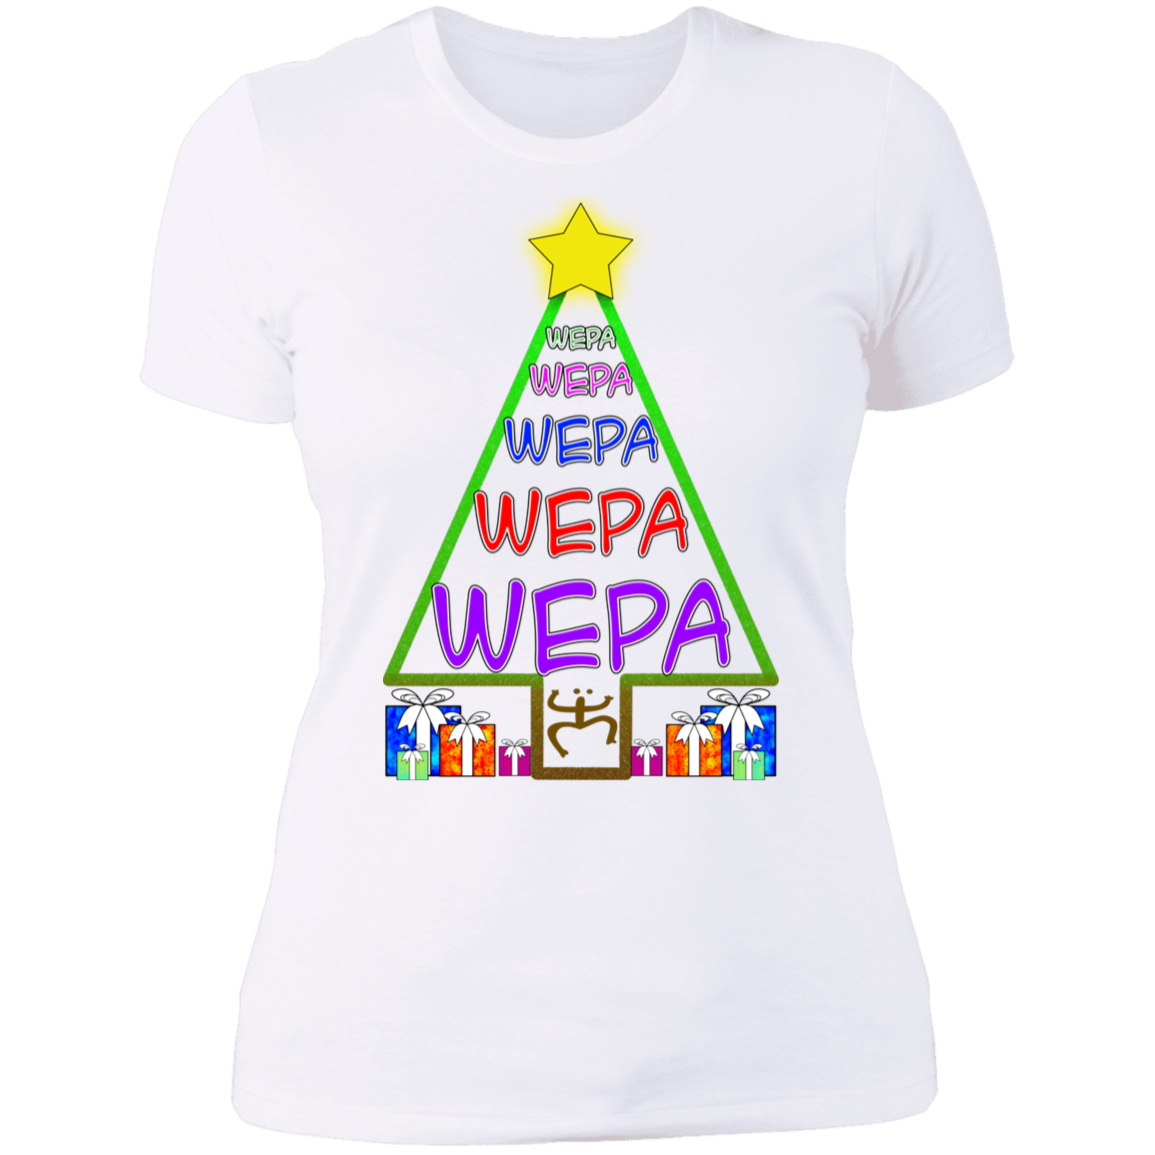 WEPA Tree Ladies' Boyfriend T-Shirt - Puerto Rican Pride